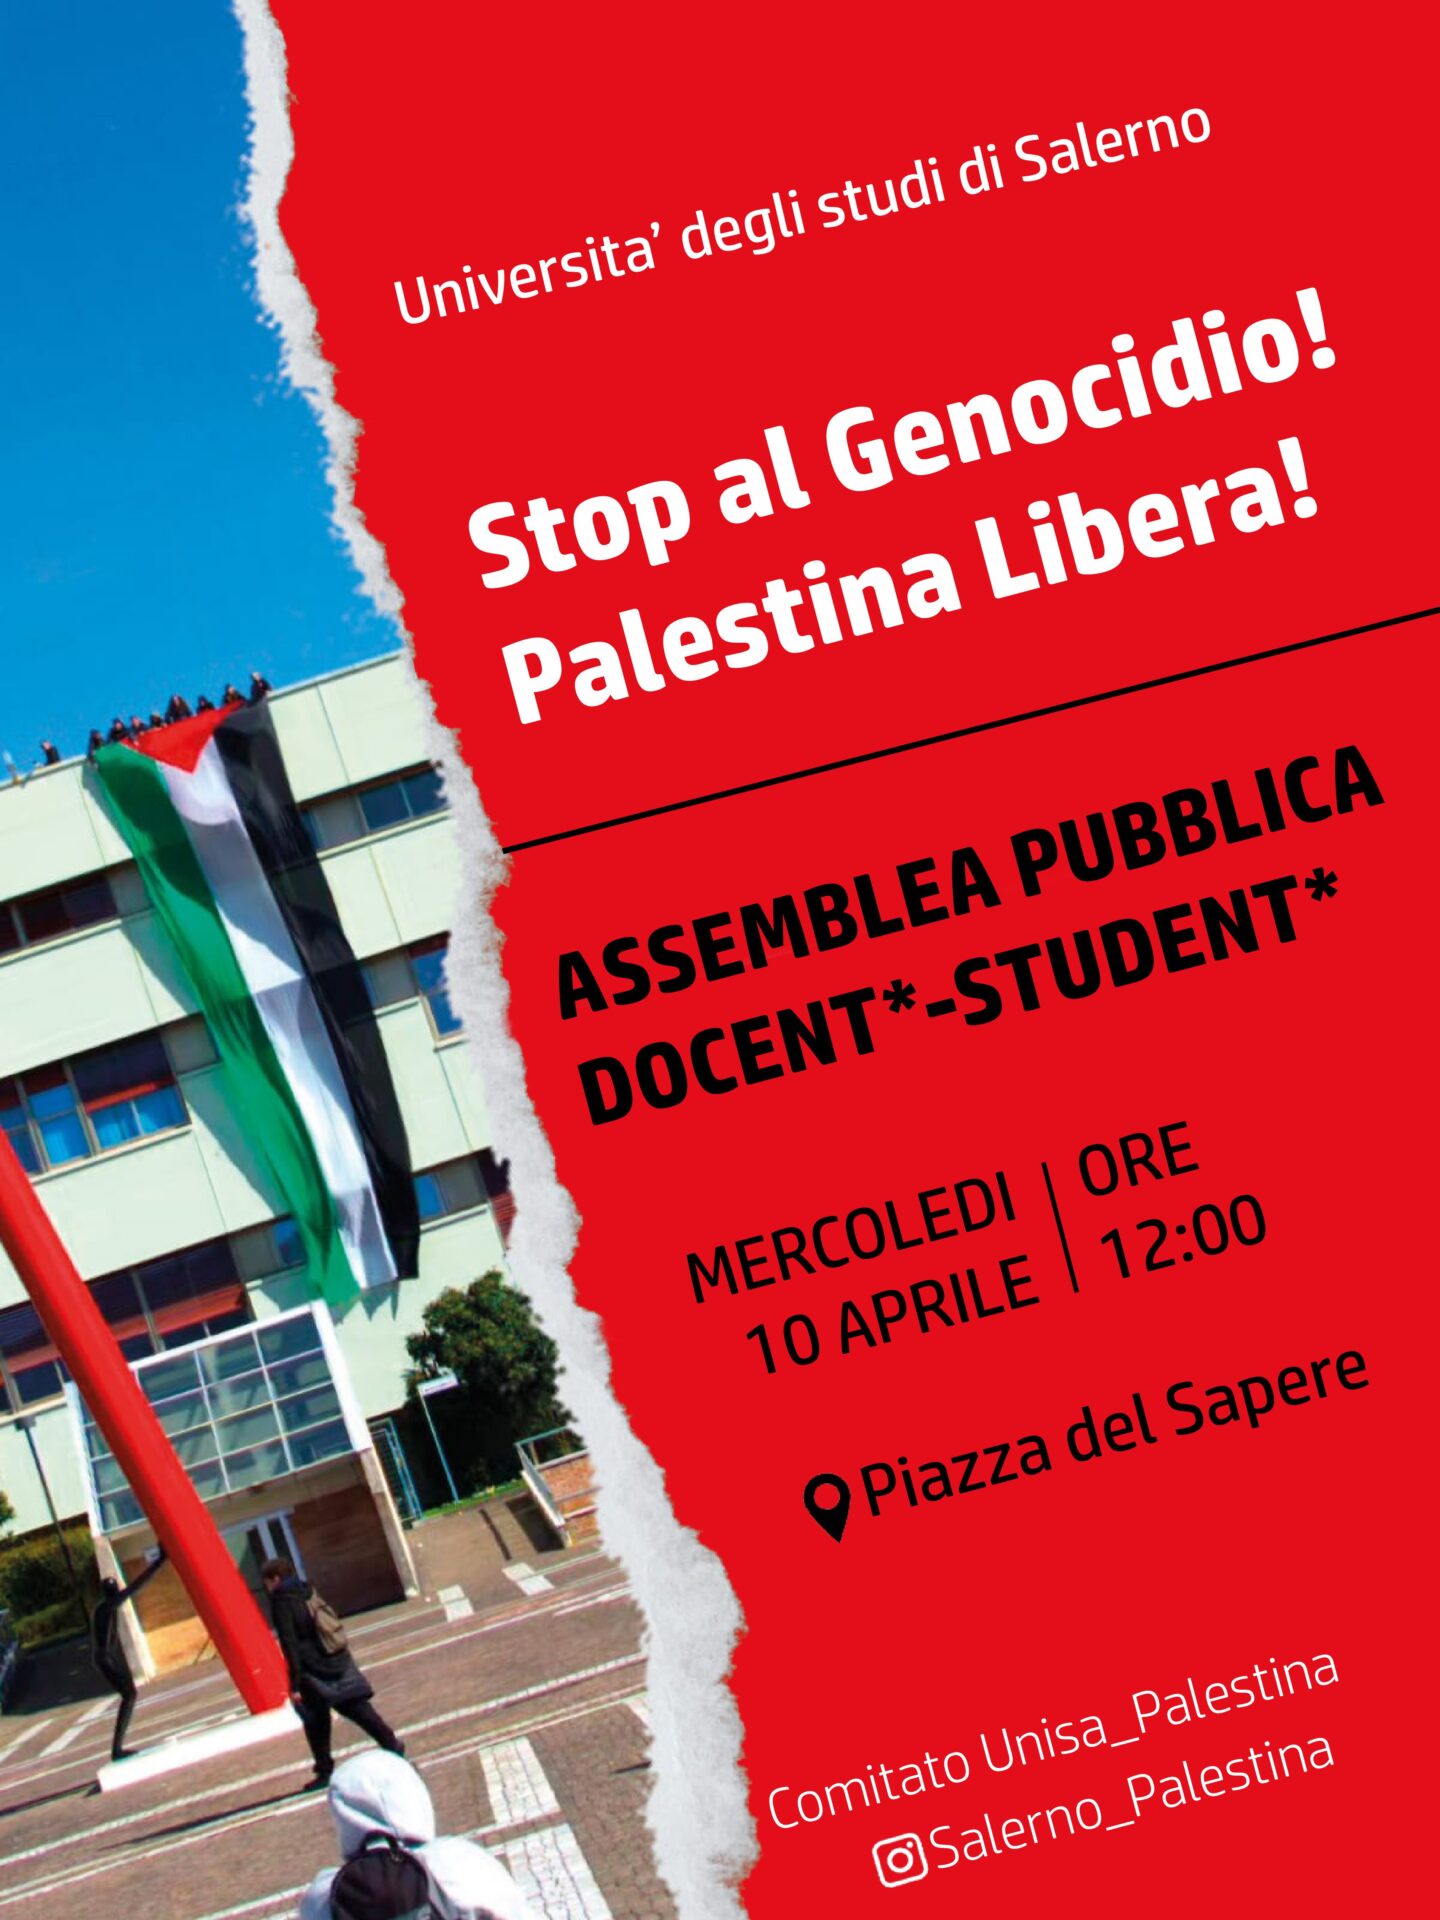 Salerno: mercoledì 10 aprile, assemblea pubblica di studentə e docentə contro gli accordi tra UniSa e Israele